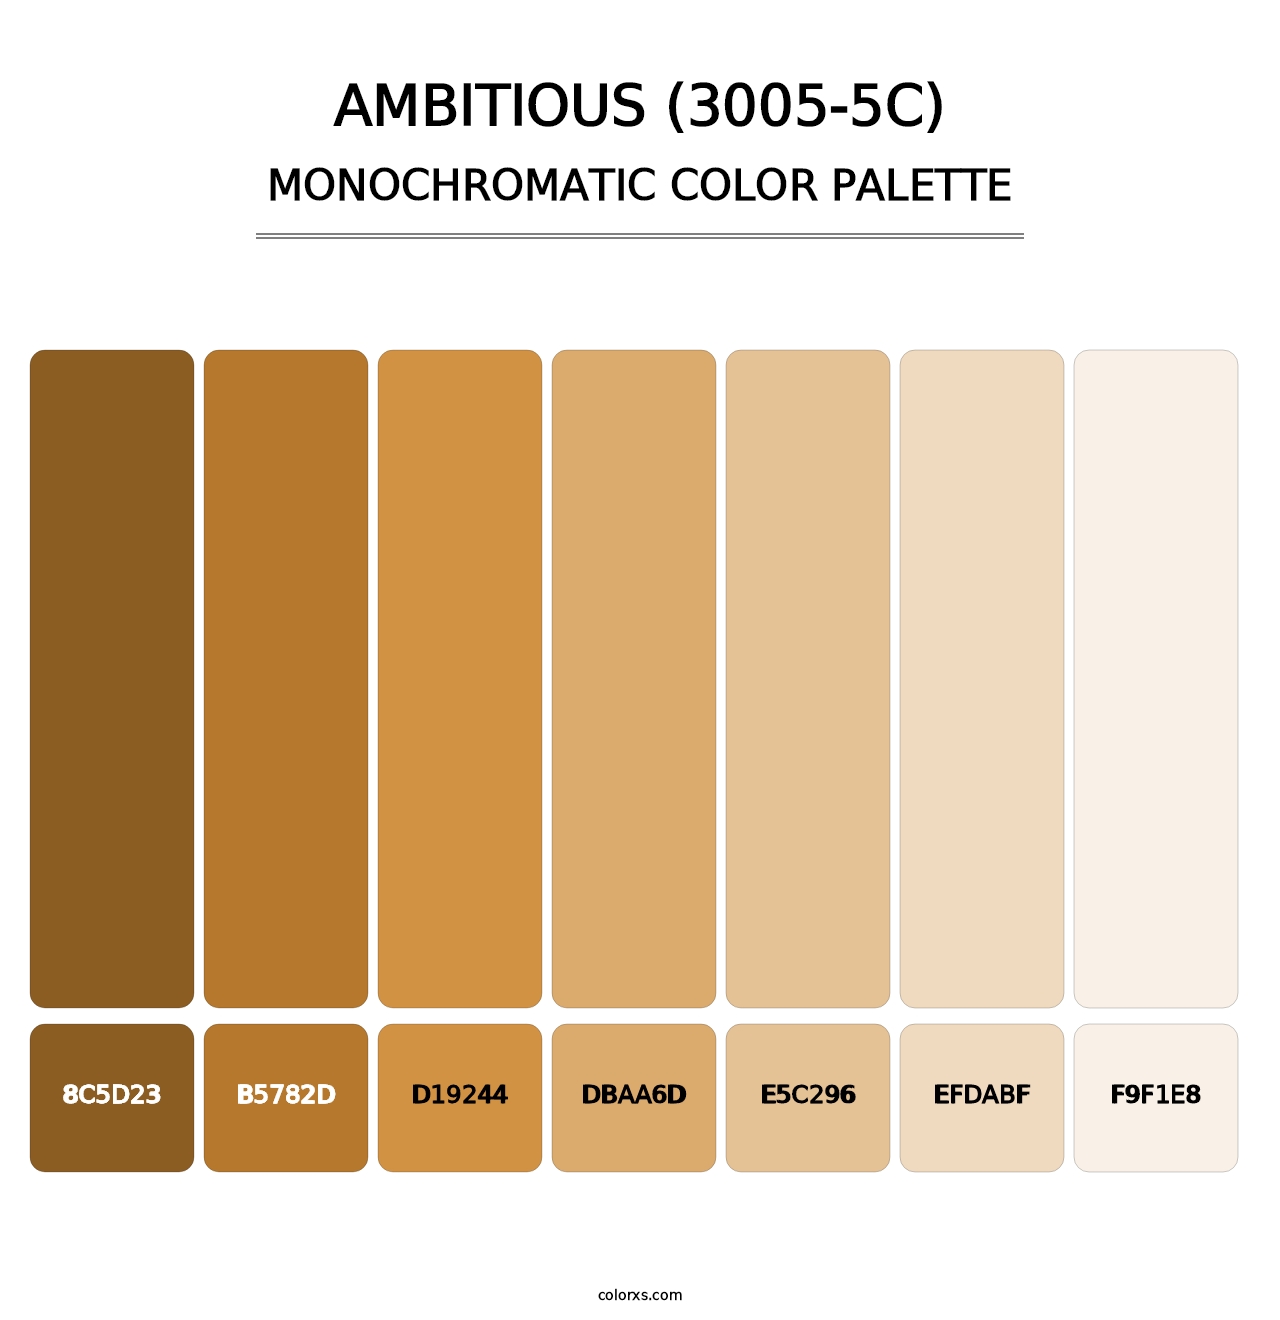 Ambitious (3005-5C) - Monochromatic Color Palette